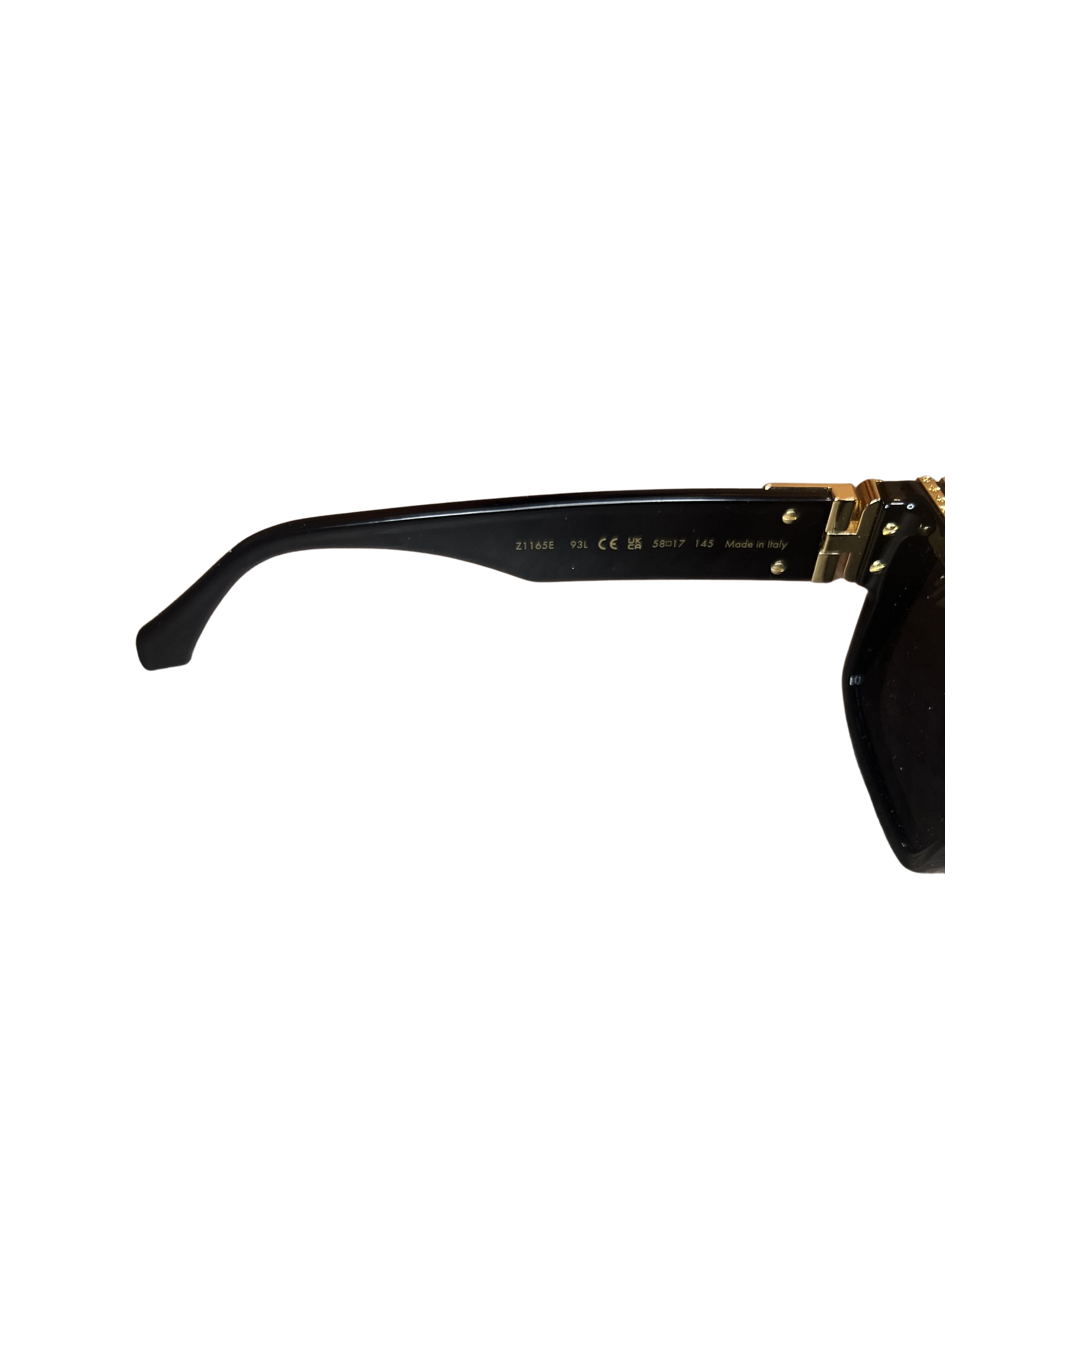 Louis Vuitton 1.1 Millionaires Sunglasses for Sale in Sacramento